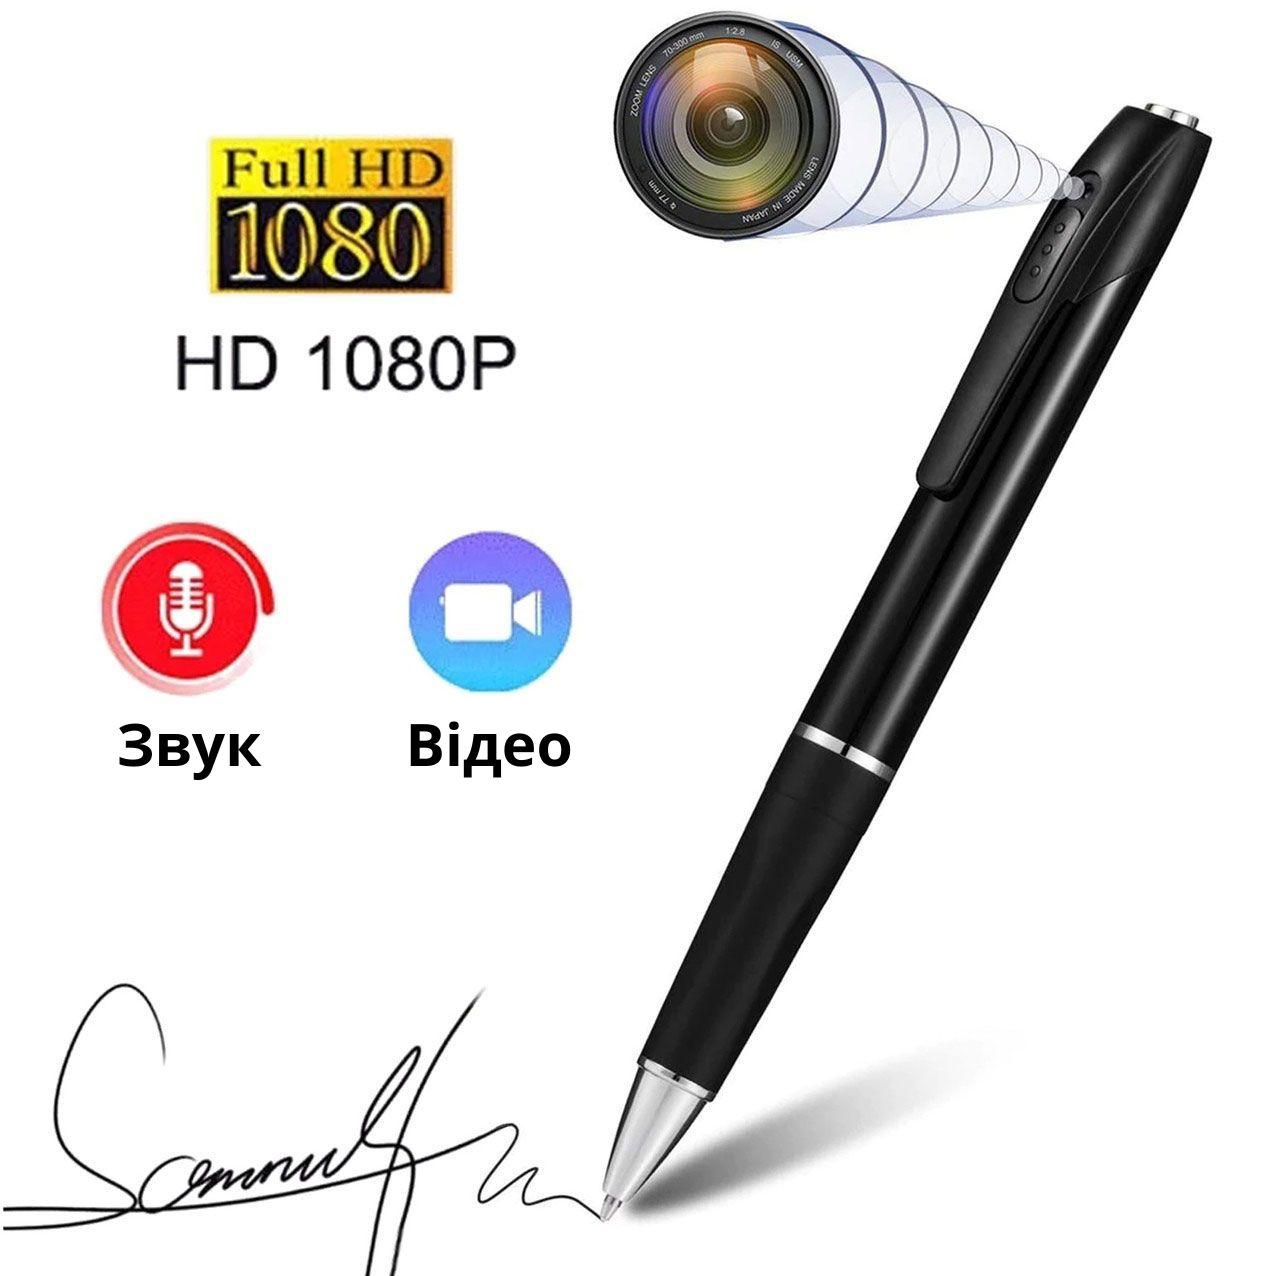 Прихована камера ручка. Міні камера. Прихована камера у формі ручки, фото, відео, аудіо запис